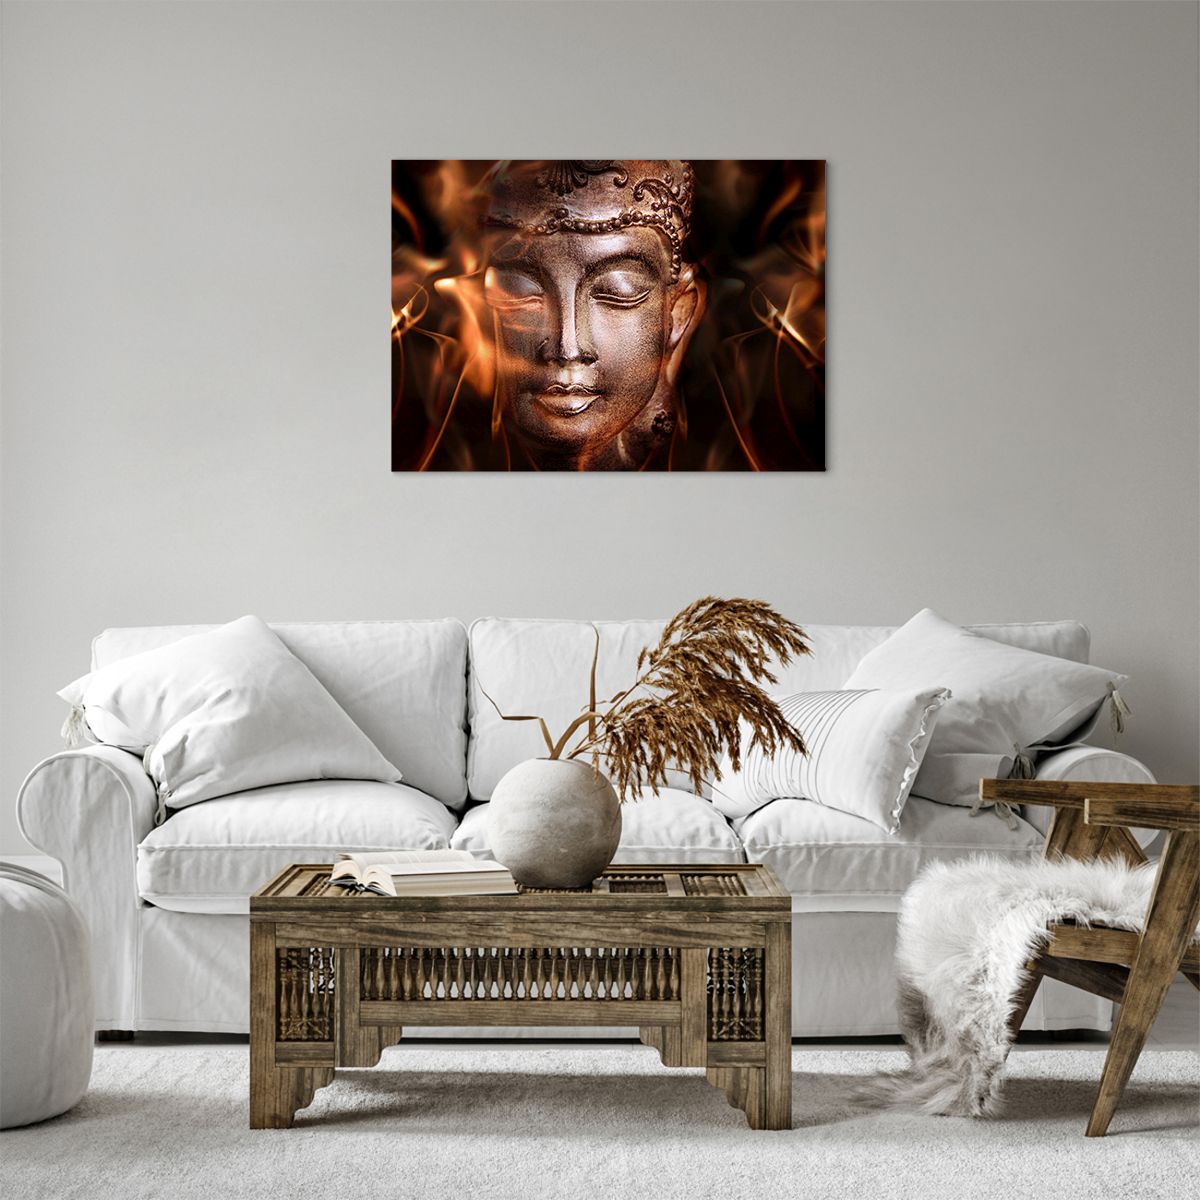 Bild auf Leinwand Buddha, Bild auf Leinwand Religion, Bild auf Leinwand Asien, Bild auf Leinwand Kultur, Bild auf Leinwand Statue